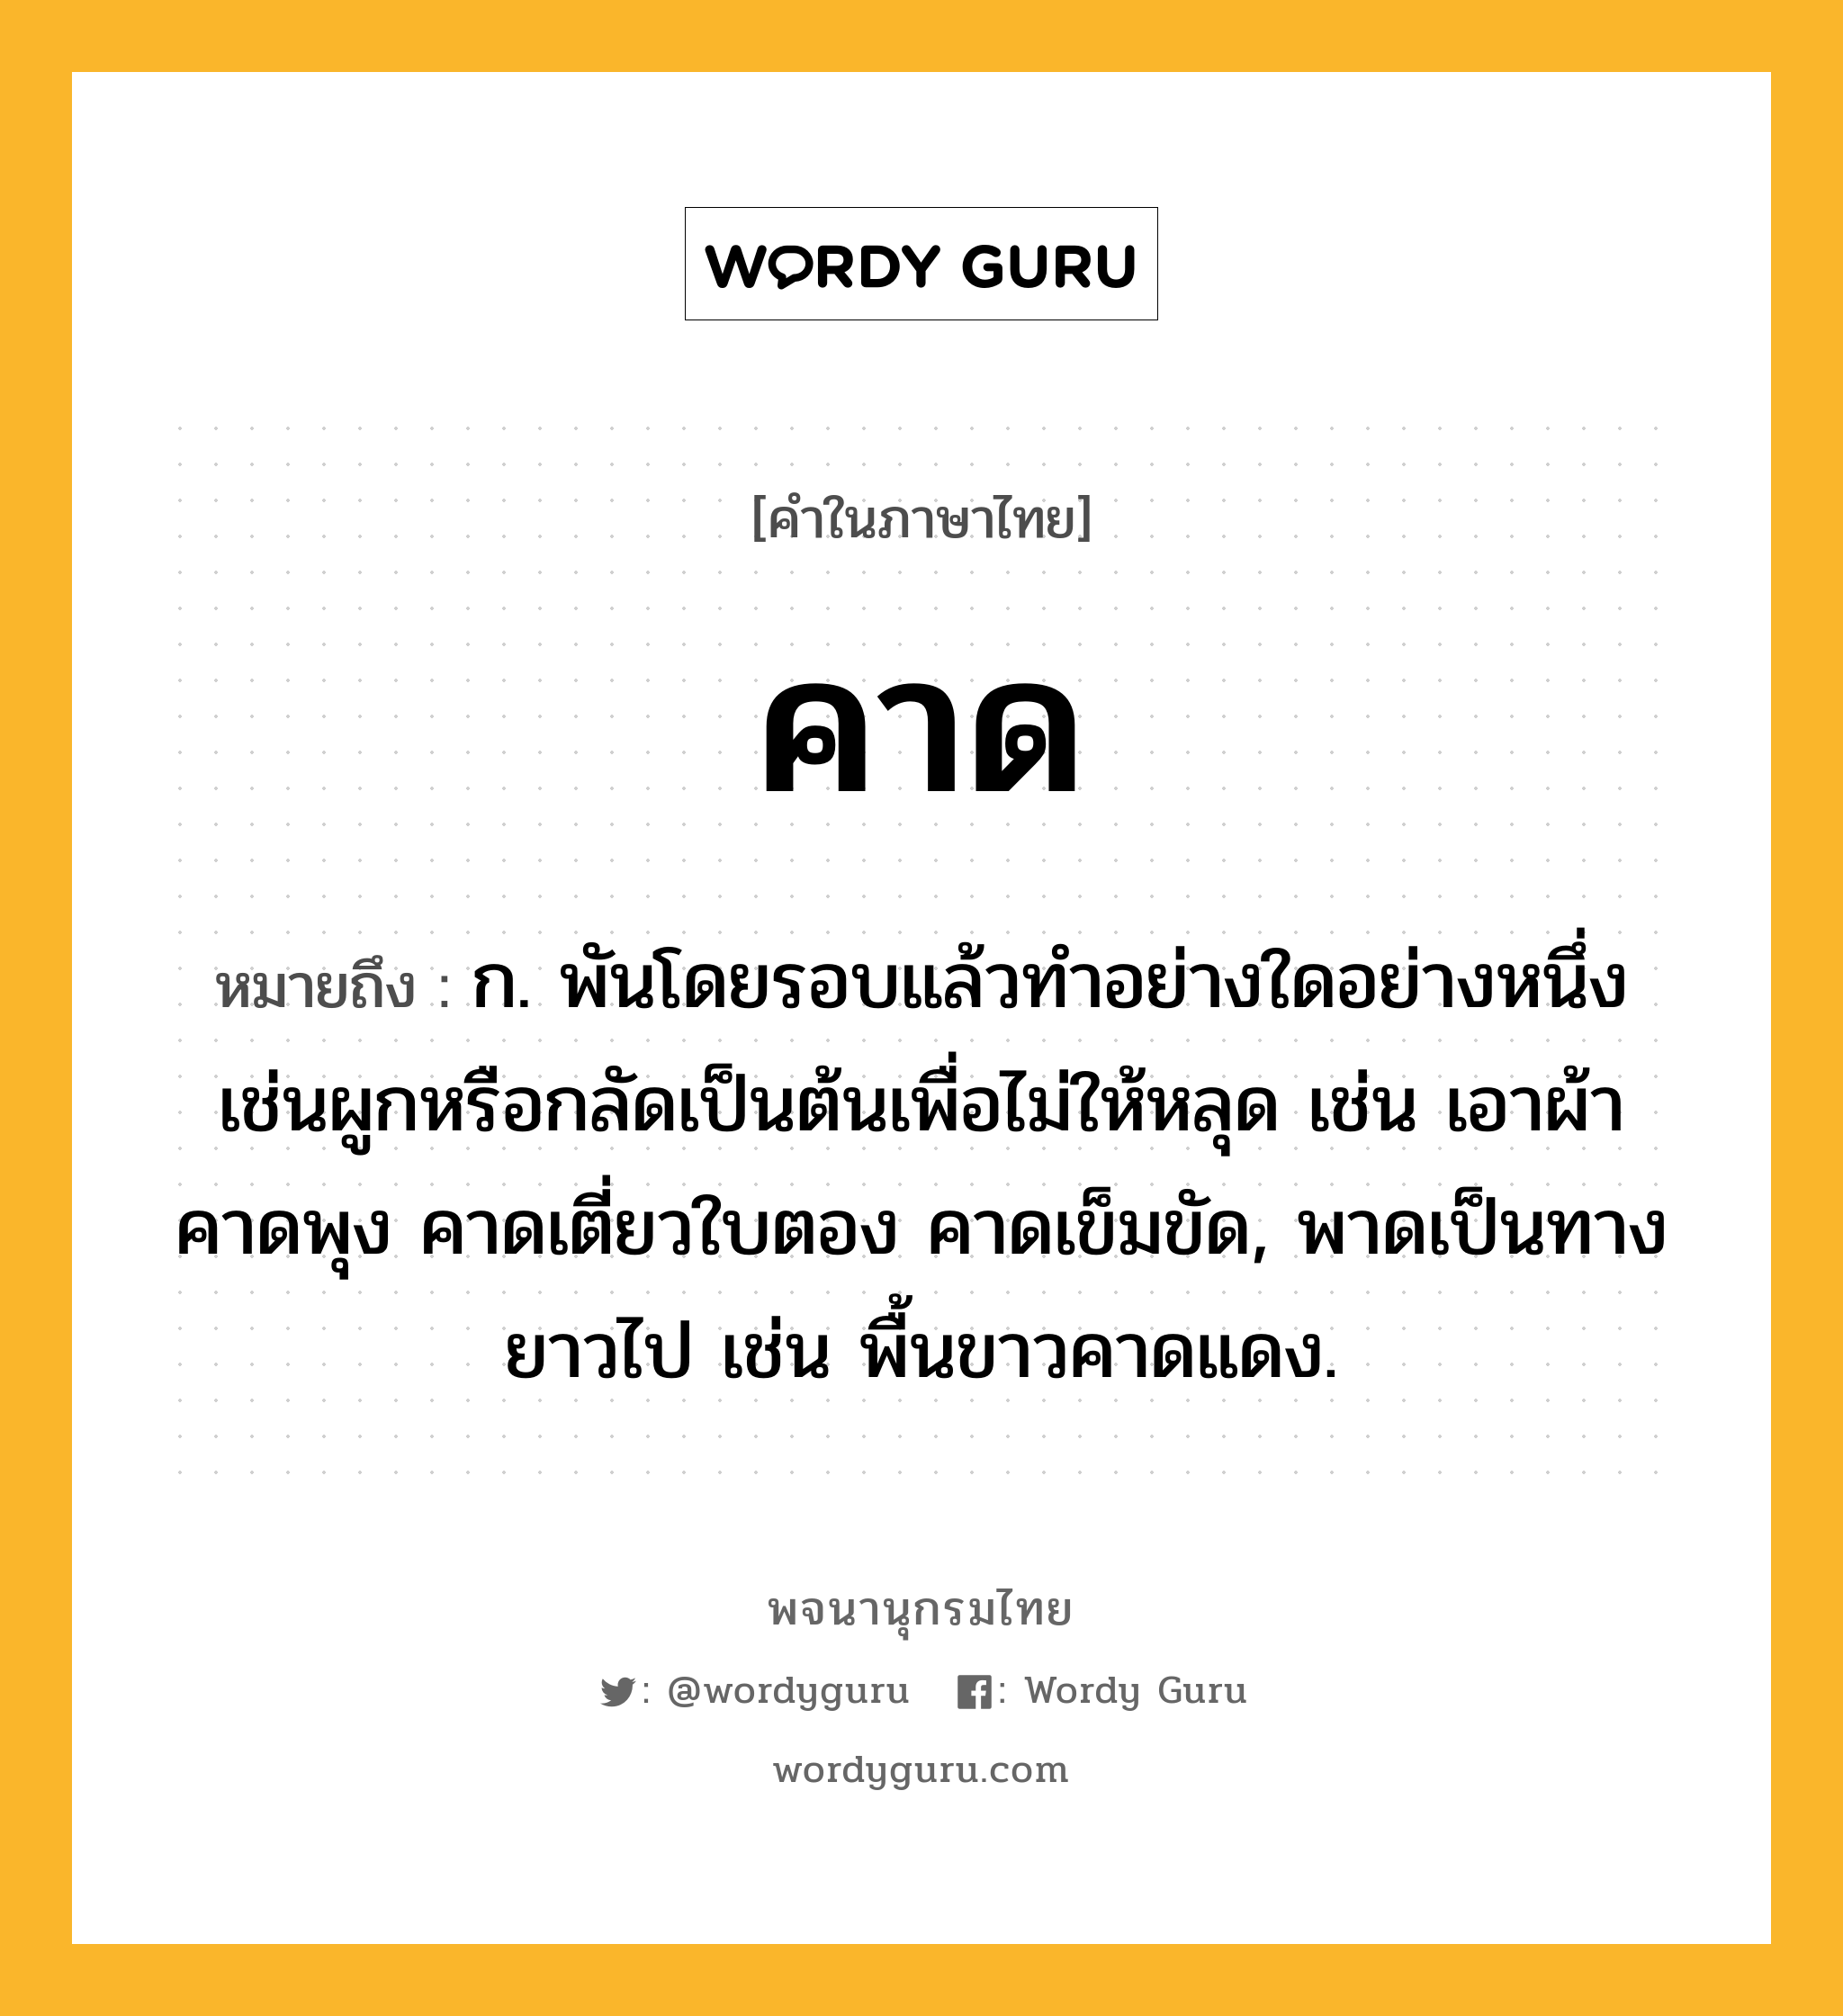 คาด ความหมาย หมายถึงอะไร?, คำในภาษาไทย คาด หมายถึง ก. พันโดยรอบแล้วทําอย่างใดอย่างหนึ่งเช่นผูกหรือกลัดเป็นต้นเพื่อไม่ให้หลุด เช่น เอาผ้าคาดพุง คาดเตี่ยวใบตอง คาดเข็มขัด, พาดเป็นทางยาวไป เช่น พื้นขาวคาดแดง.